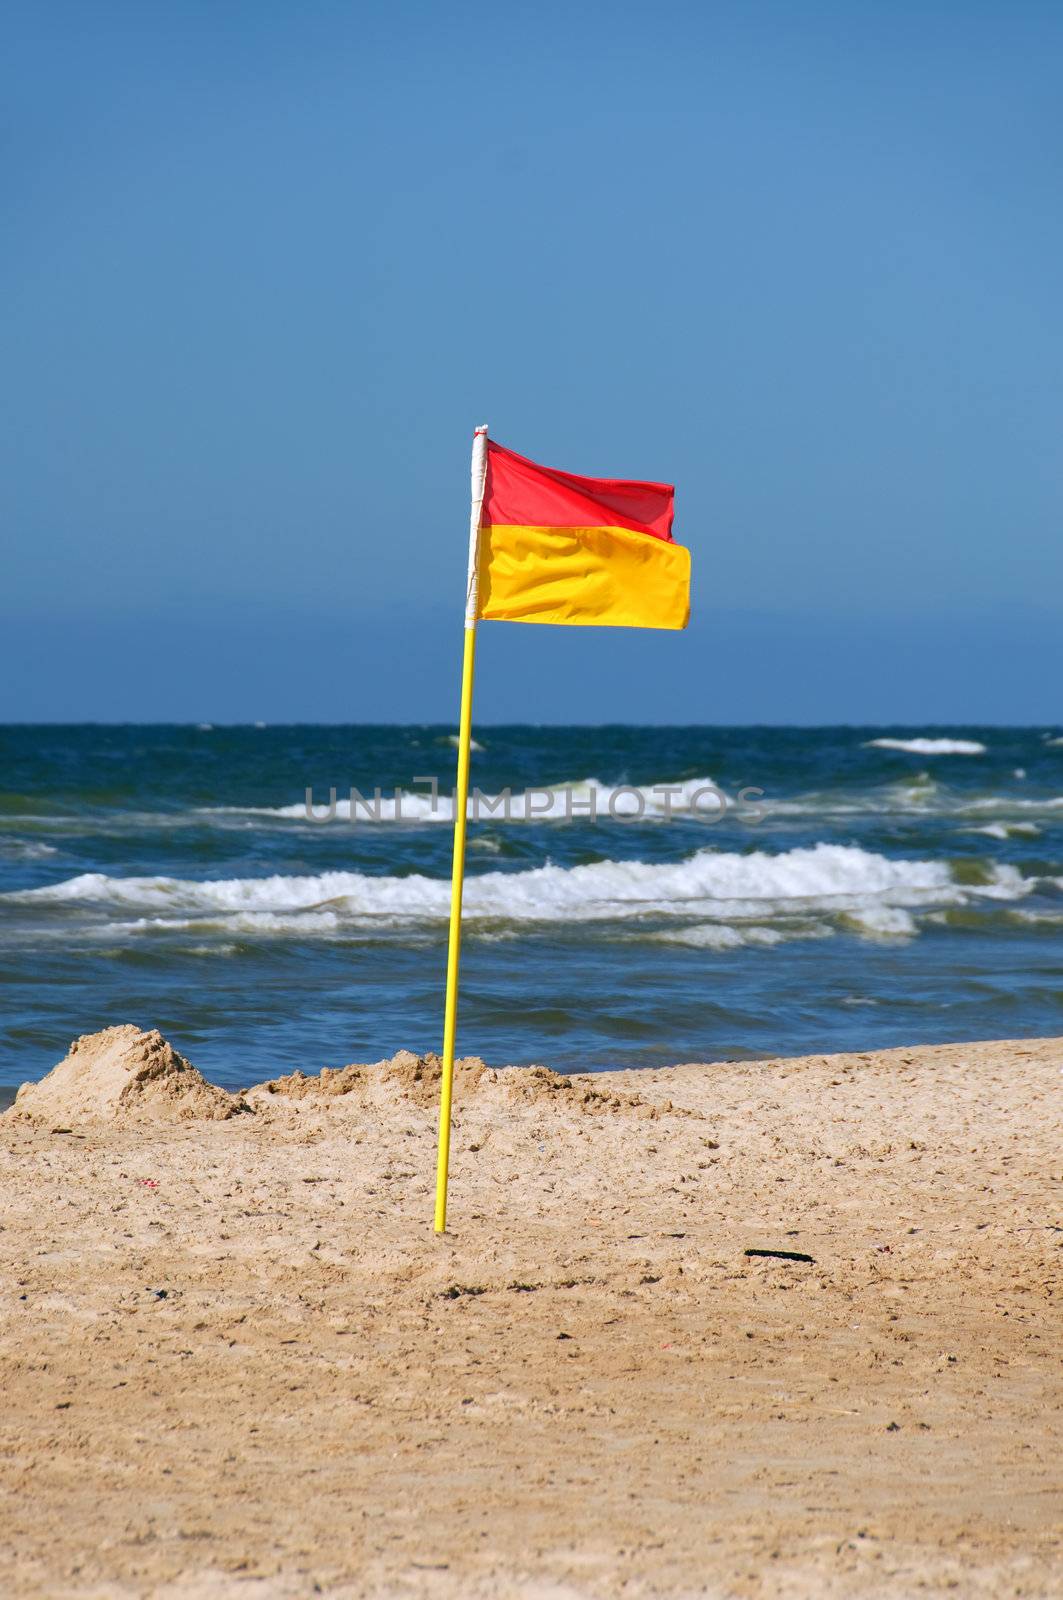 A lifeguard flag on the beach